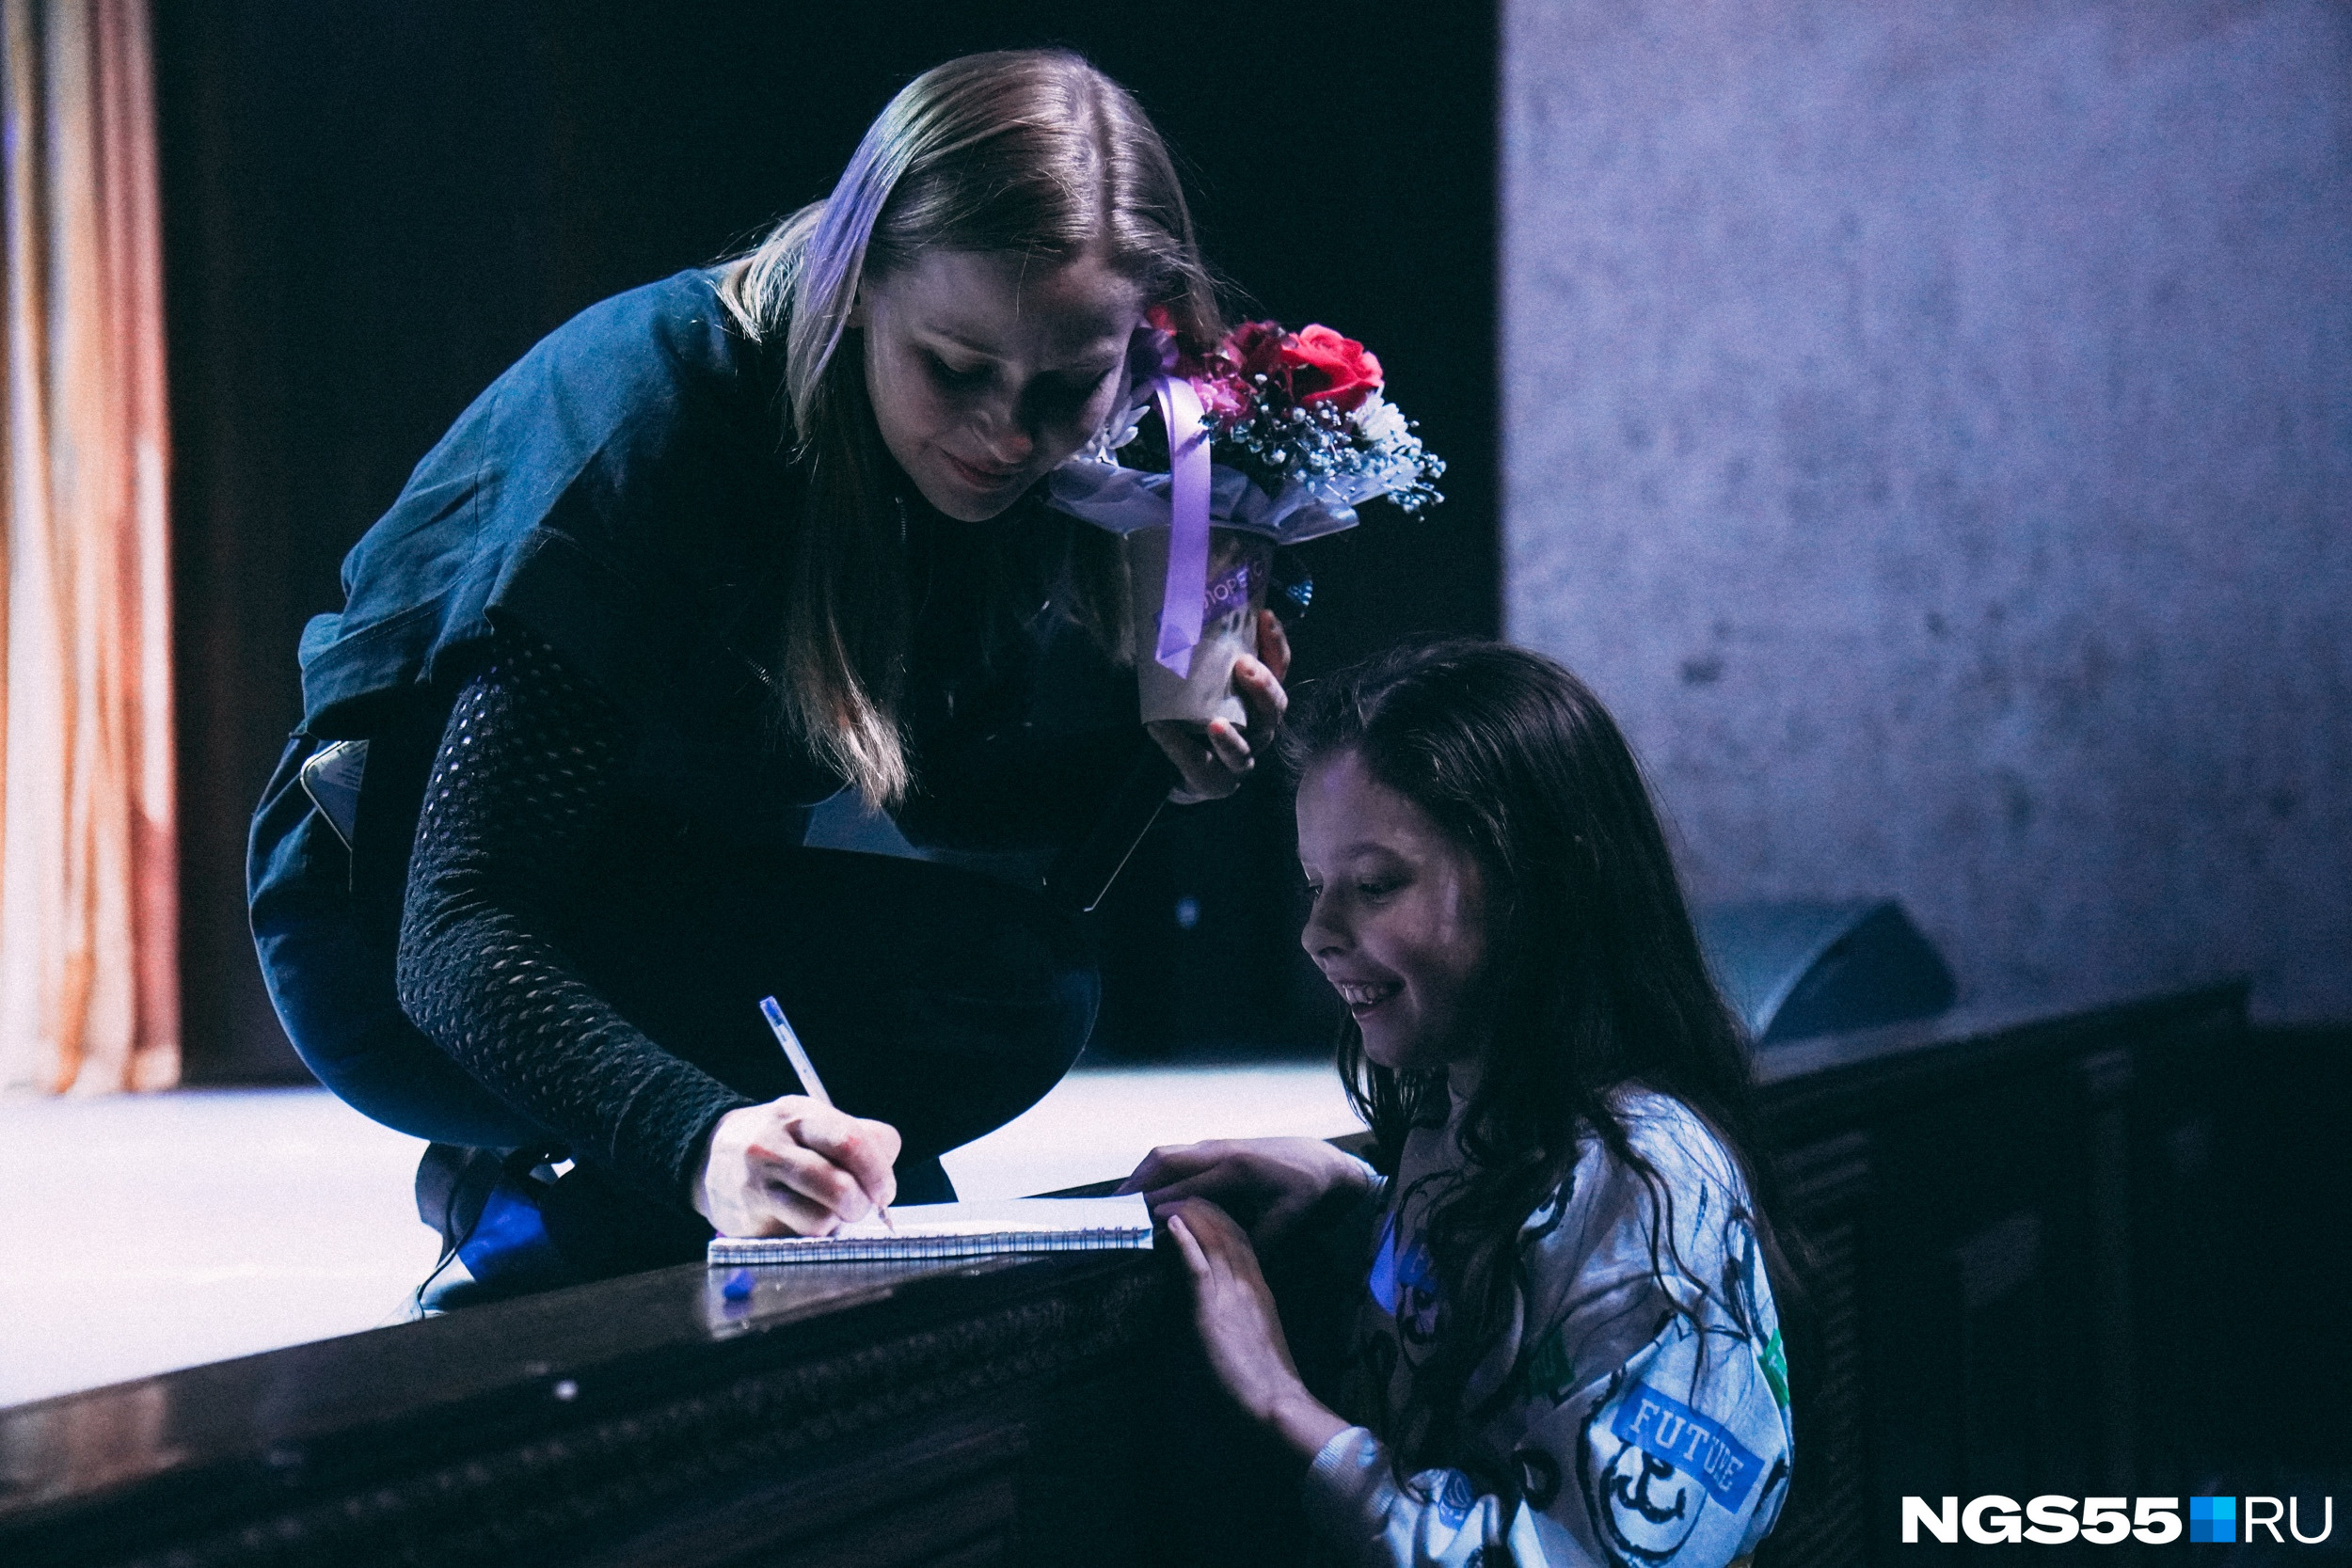 Актриса не только дала автограф, но и подождала, пока мама девочки настроит телефон, чтобы сделать общий кадр